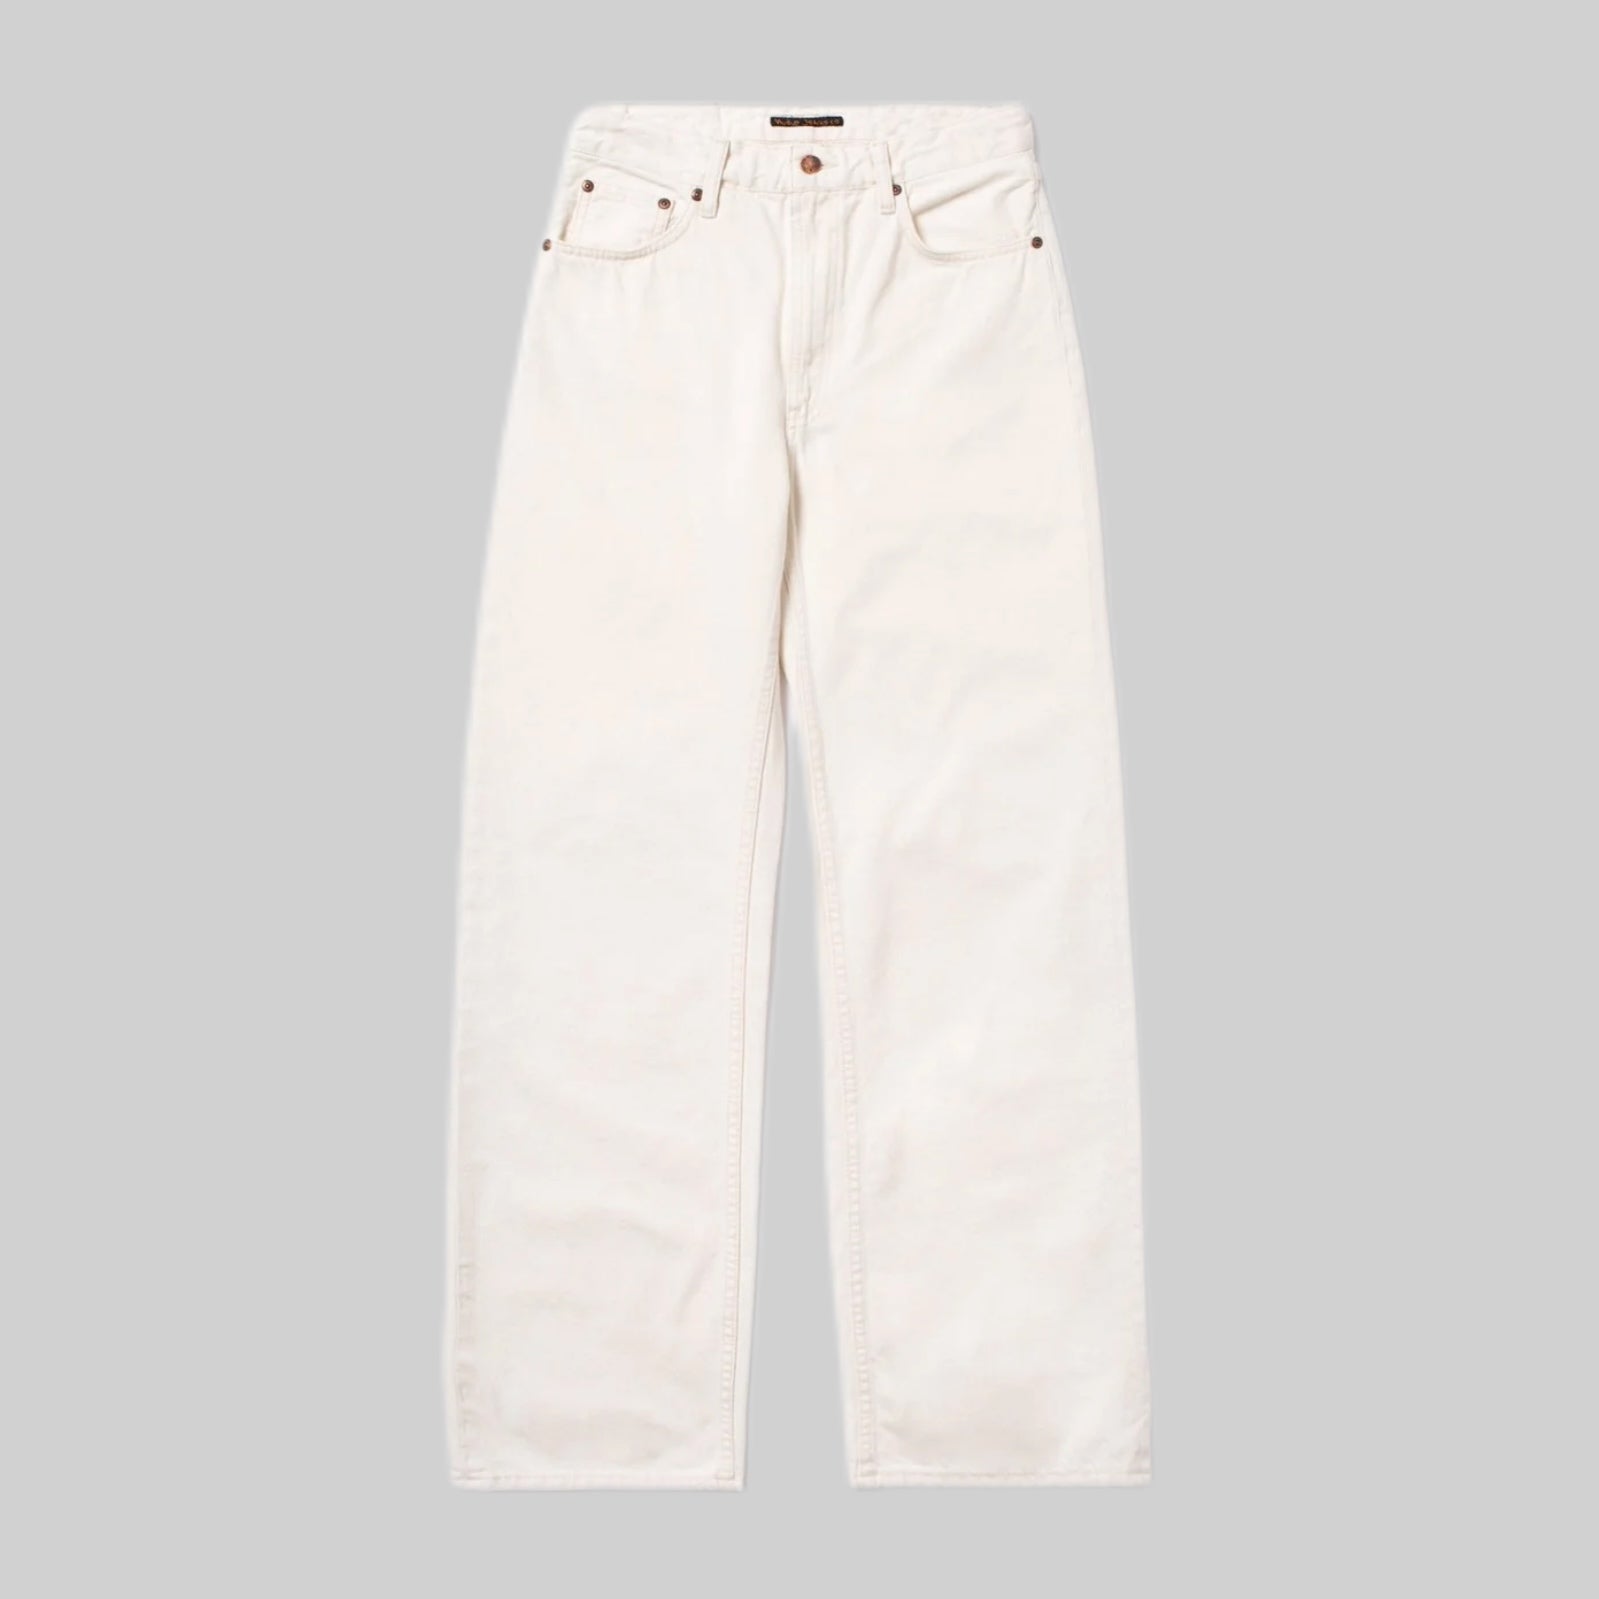 Nudiejeans jeans, white, frontside, women